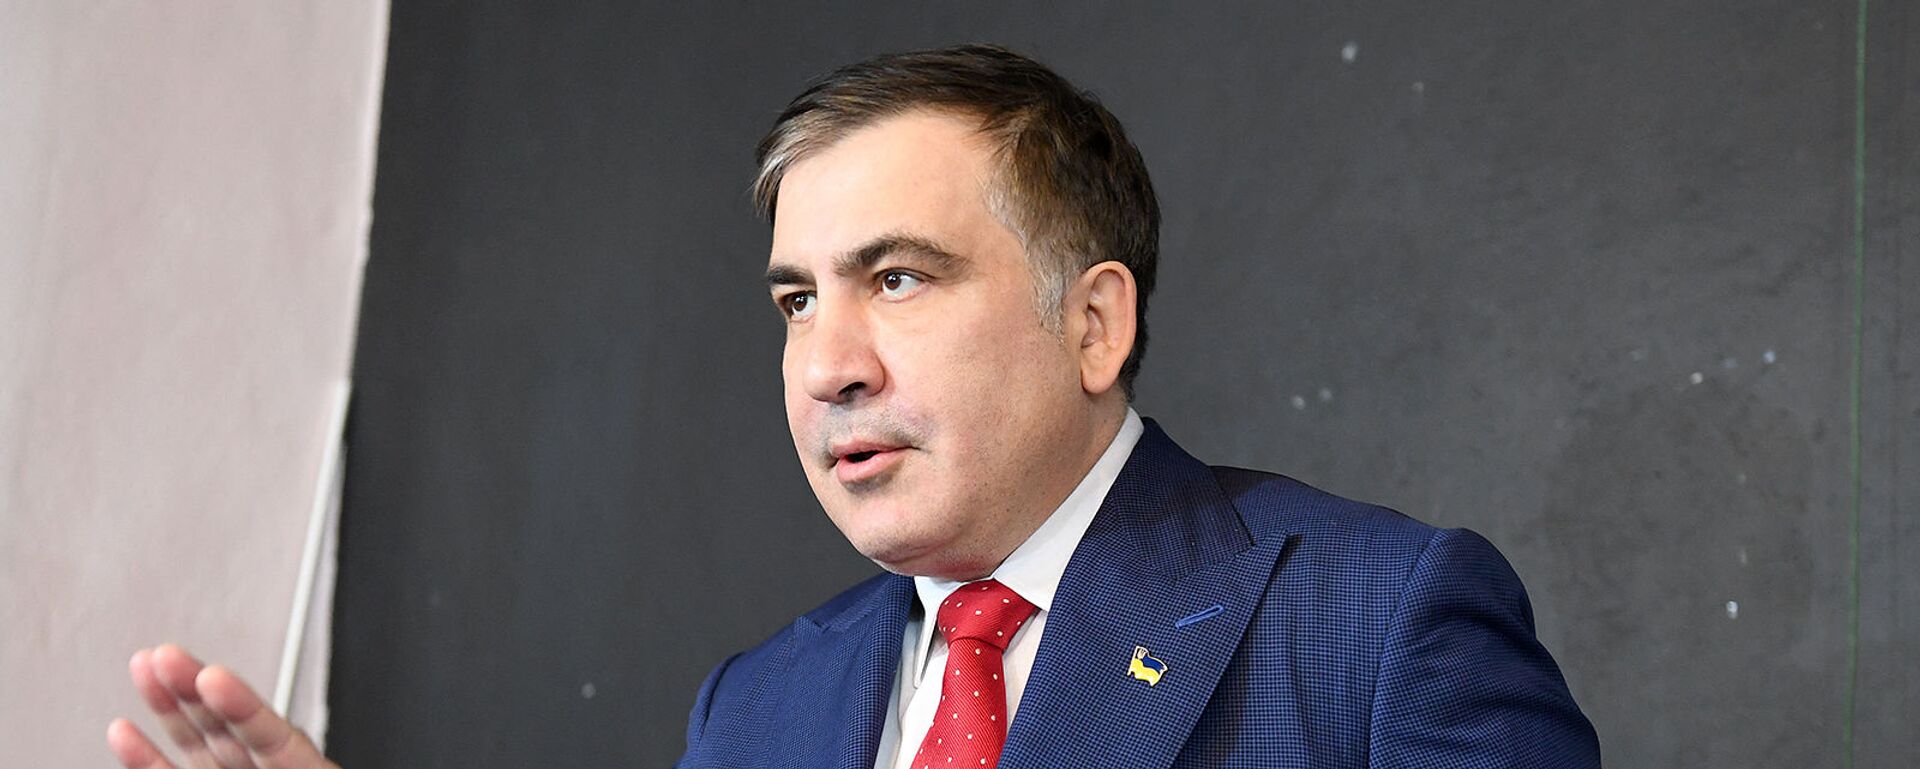 Бывший президент Грузии Михаил Саакашвили на пресс-конференции (13 февраля 2018). Варшава - Sputnik Армения, 1920, 12.10.2021